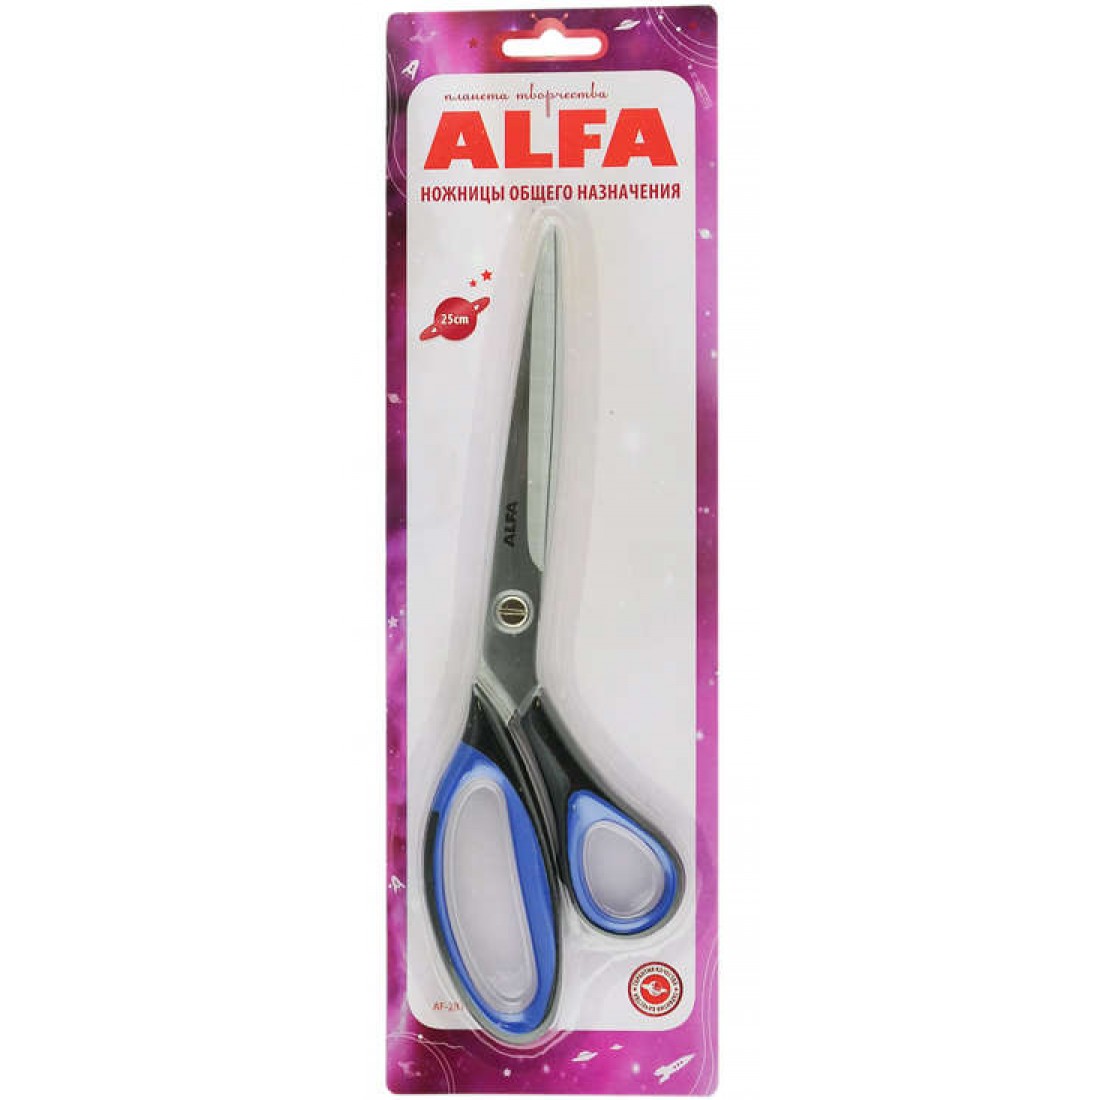 Ножницы общего назначения ALFA 25 см AF-2810